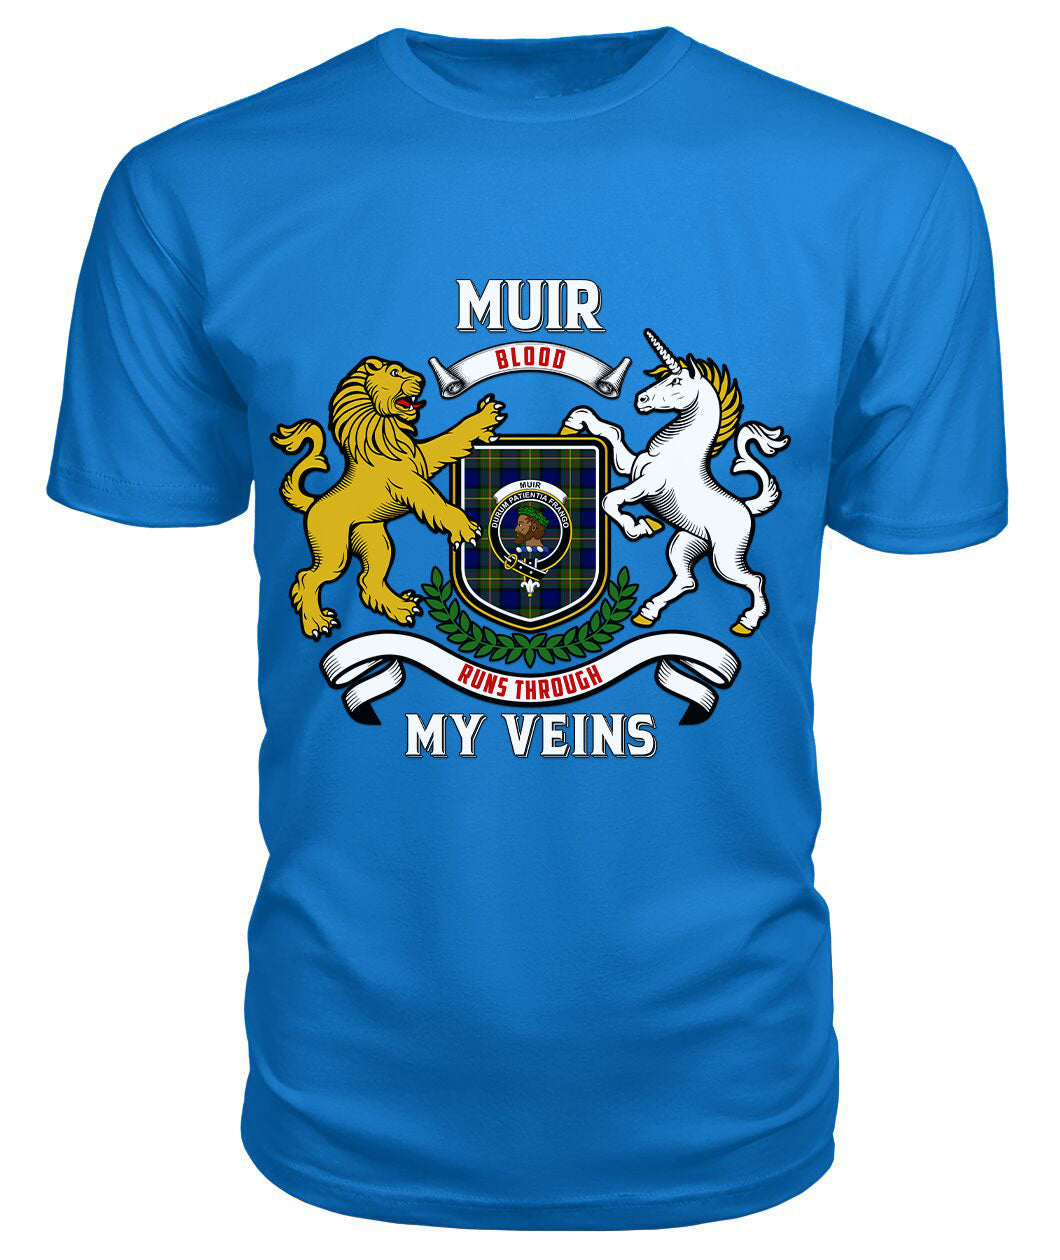 Muir Tartan Crest 2D T-shirt - Blood Runs Through My Veins Style